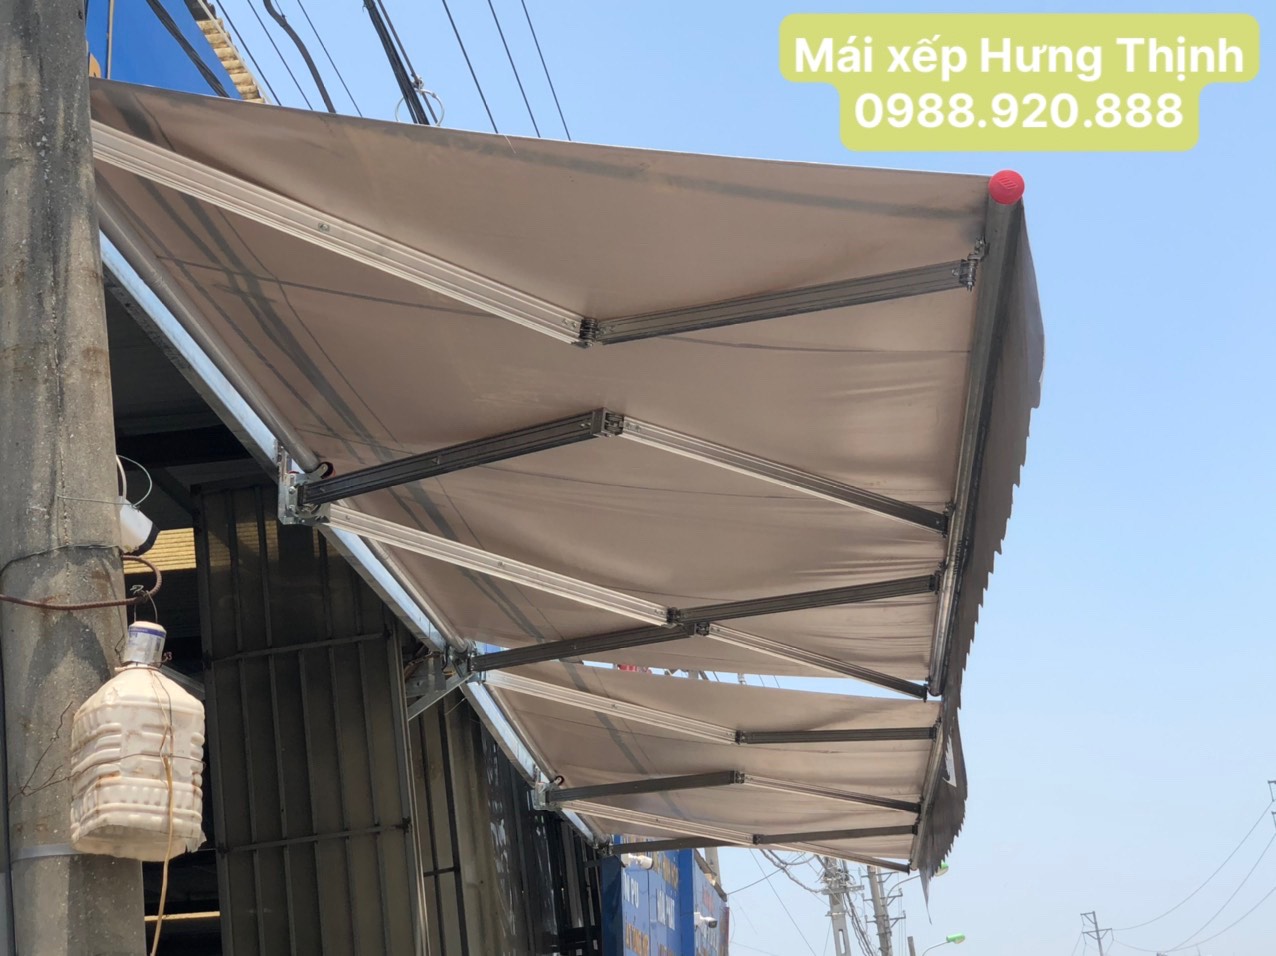 Mái hiên Hưng Thịnh -Tổng kho mái hiên, mai xếp chính hãng tại Hà Nội